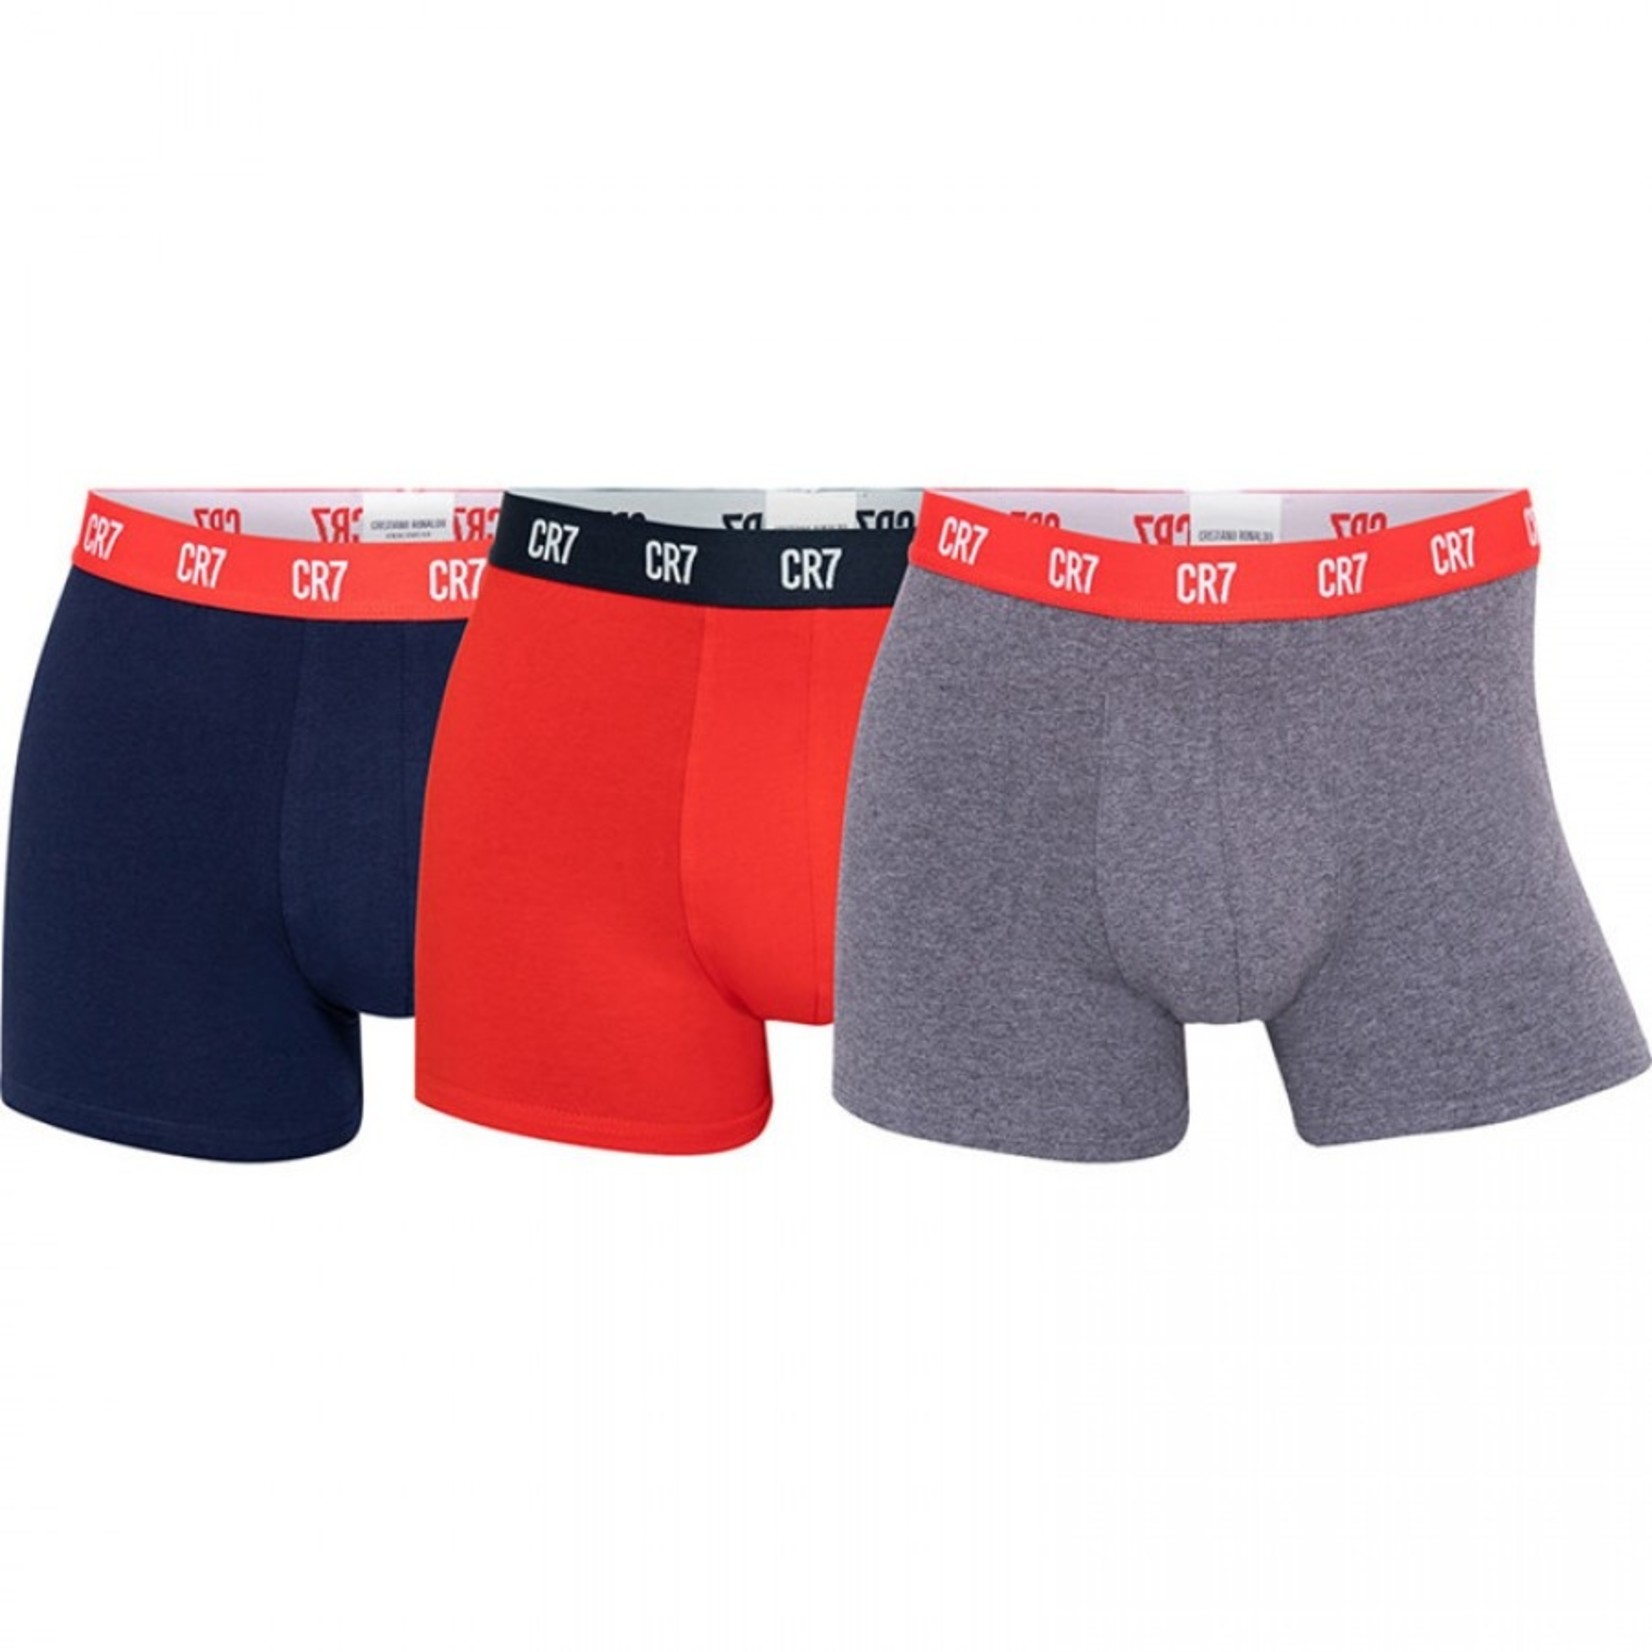 CR7 Trunk Underwear - 3 pack